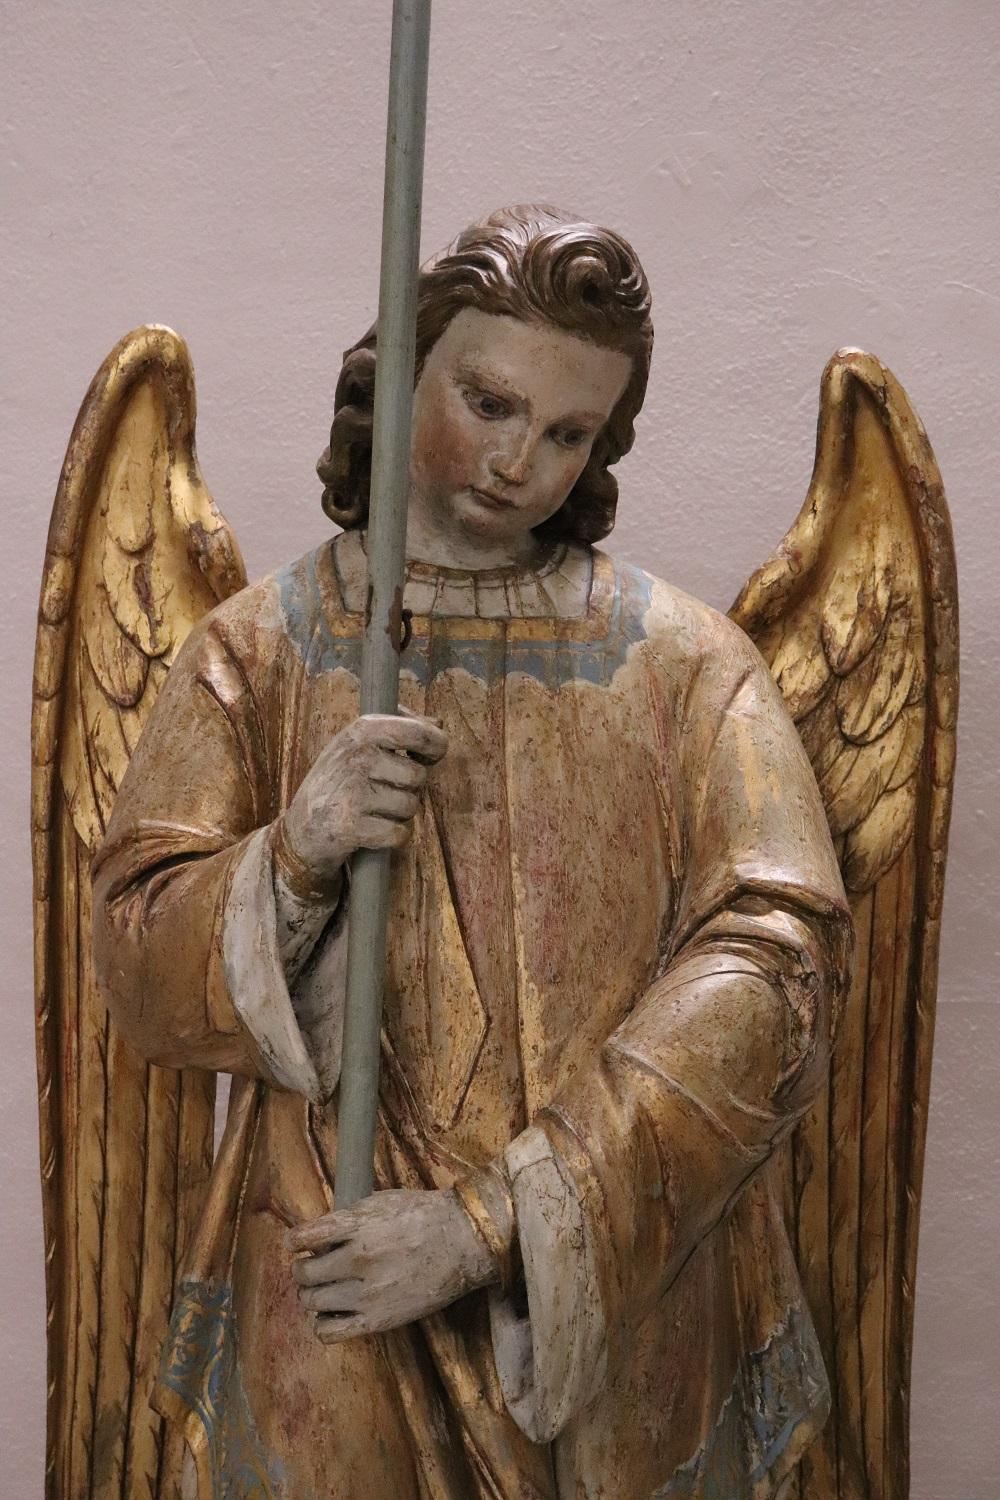 Rare sculpture d'ange antique. L'ange est entièrement laqué et doré avec de grandes ailes, tenant une grande bougie. Ils sont d'une taille fantastique, fabriqués en bois sculpté à la main et dorés à la feuille d'or. L'or a acquis une belle patine